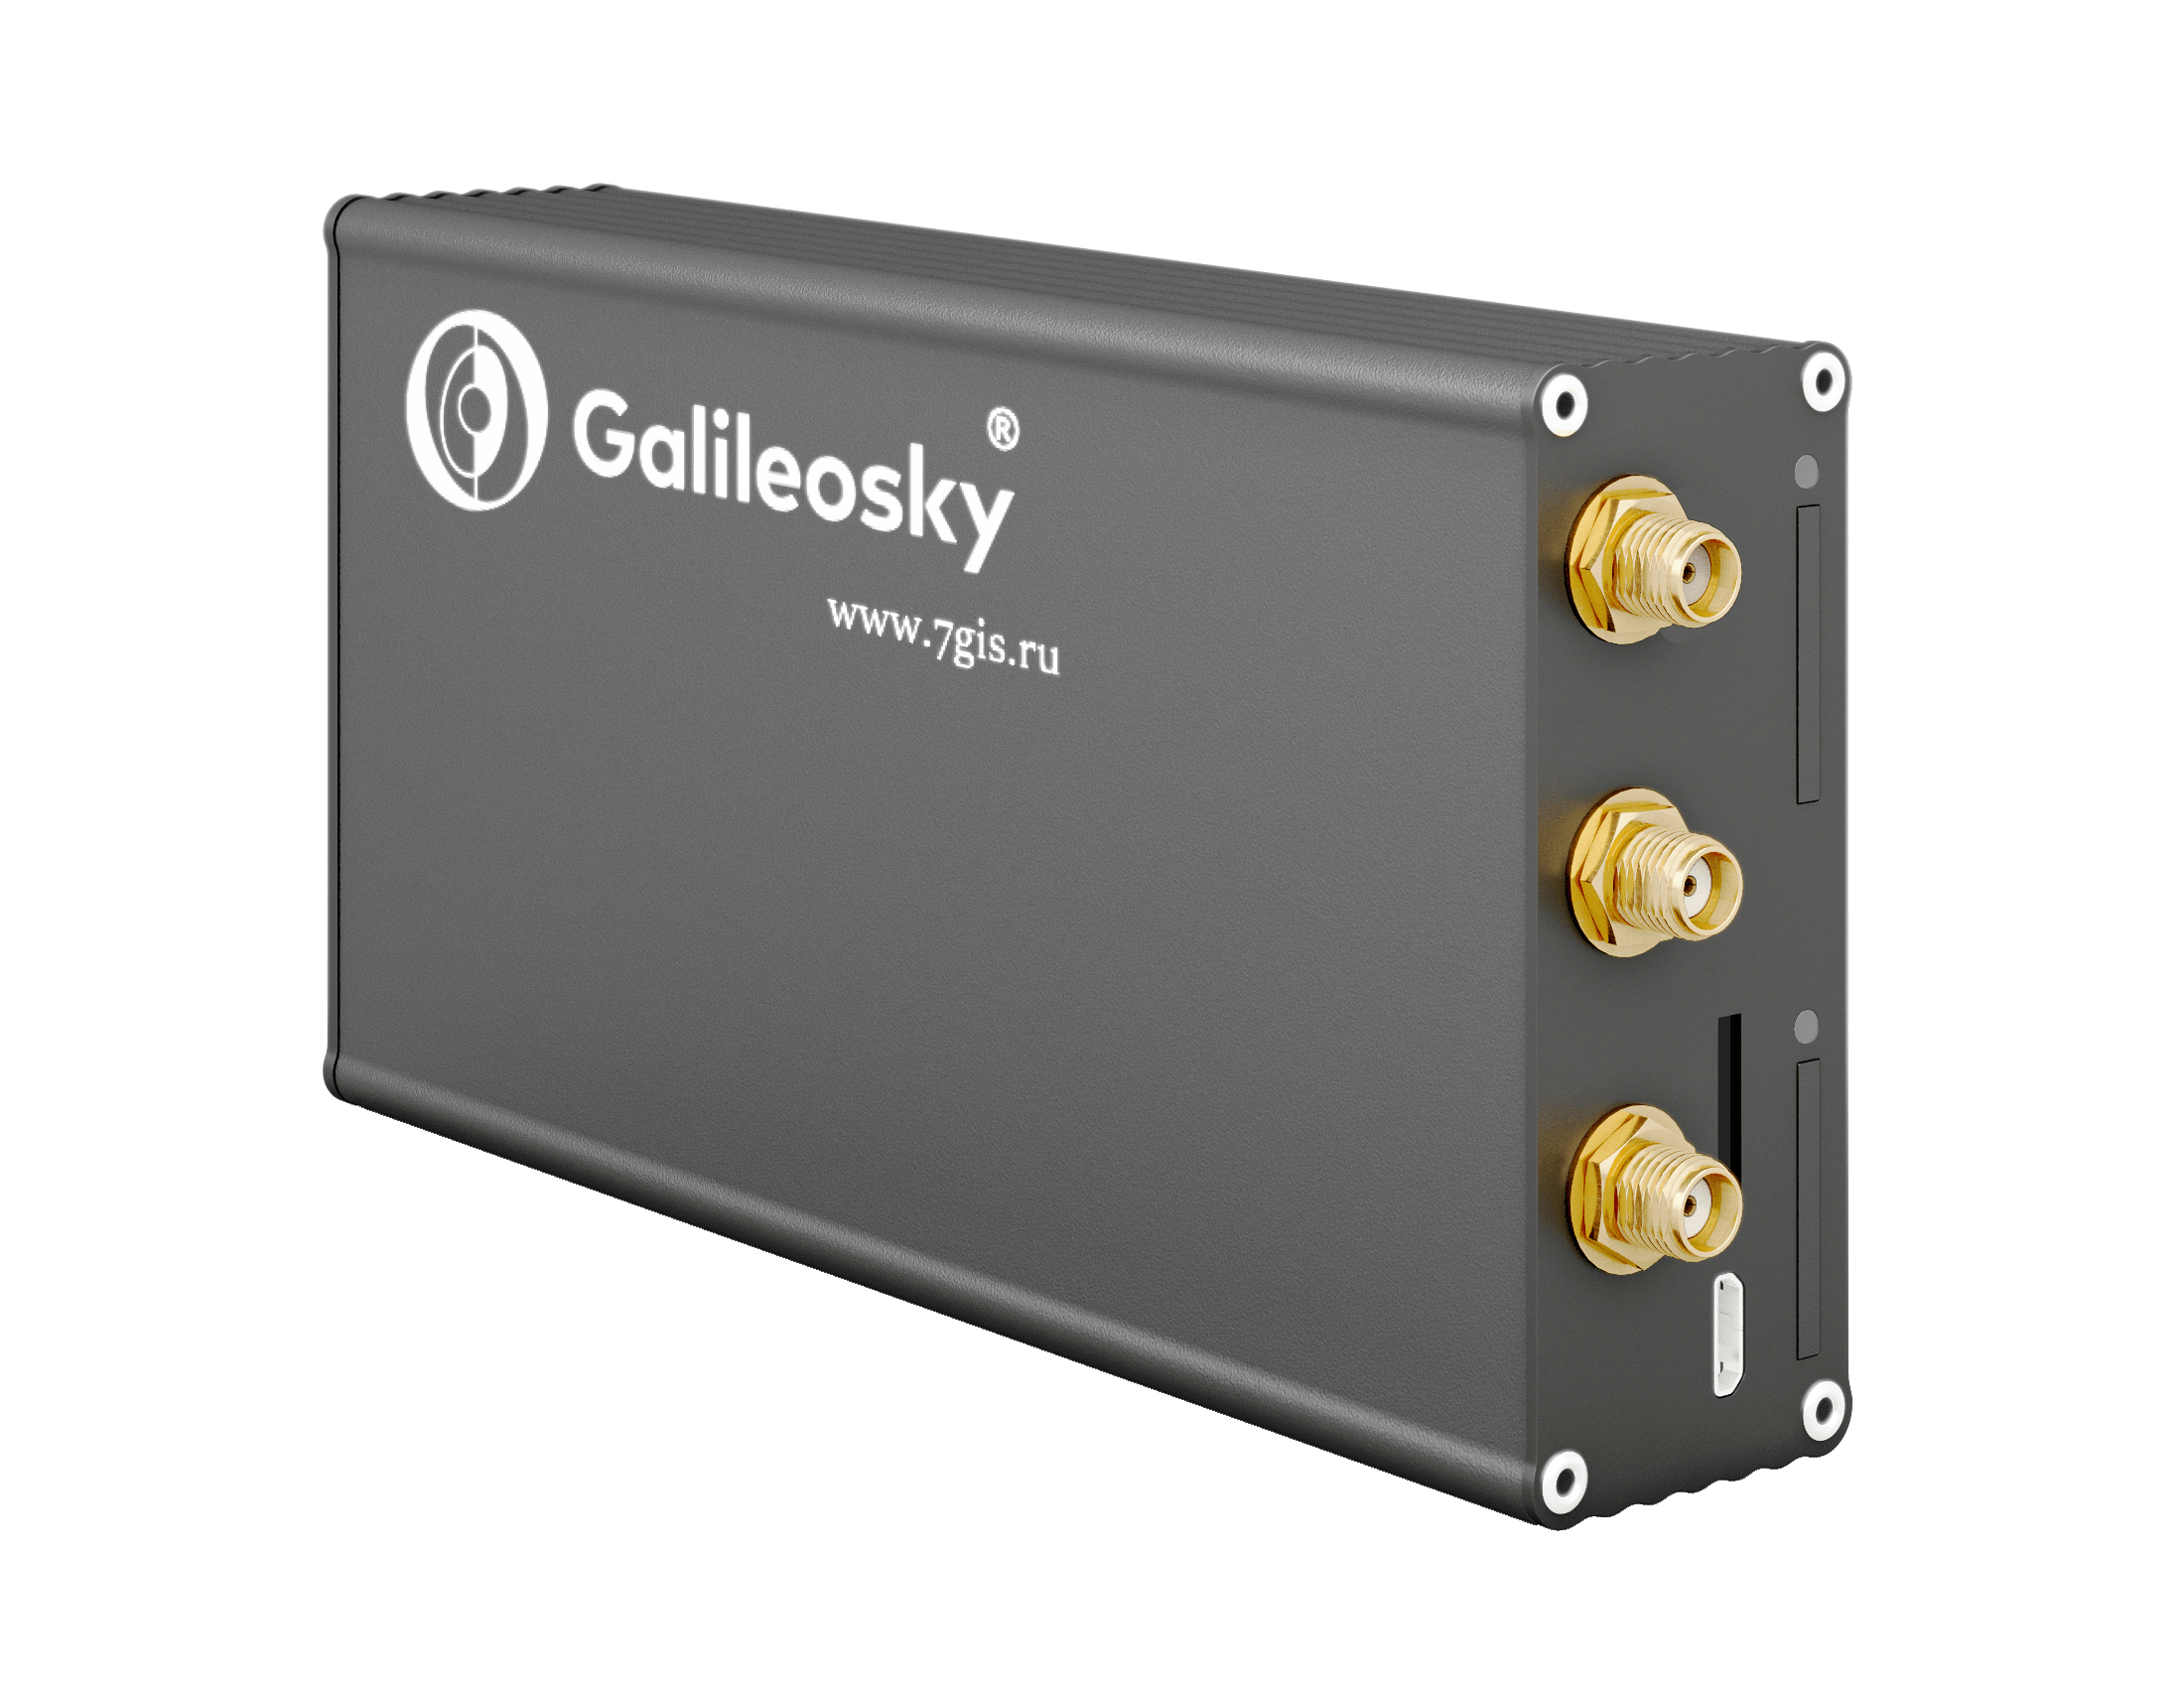 GALILEOSKY v 4.0